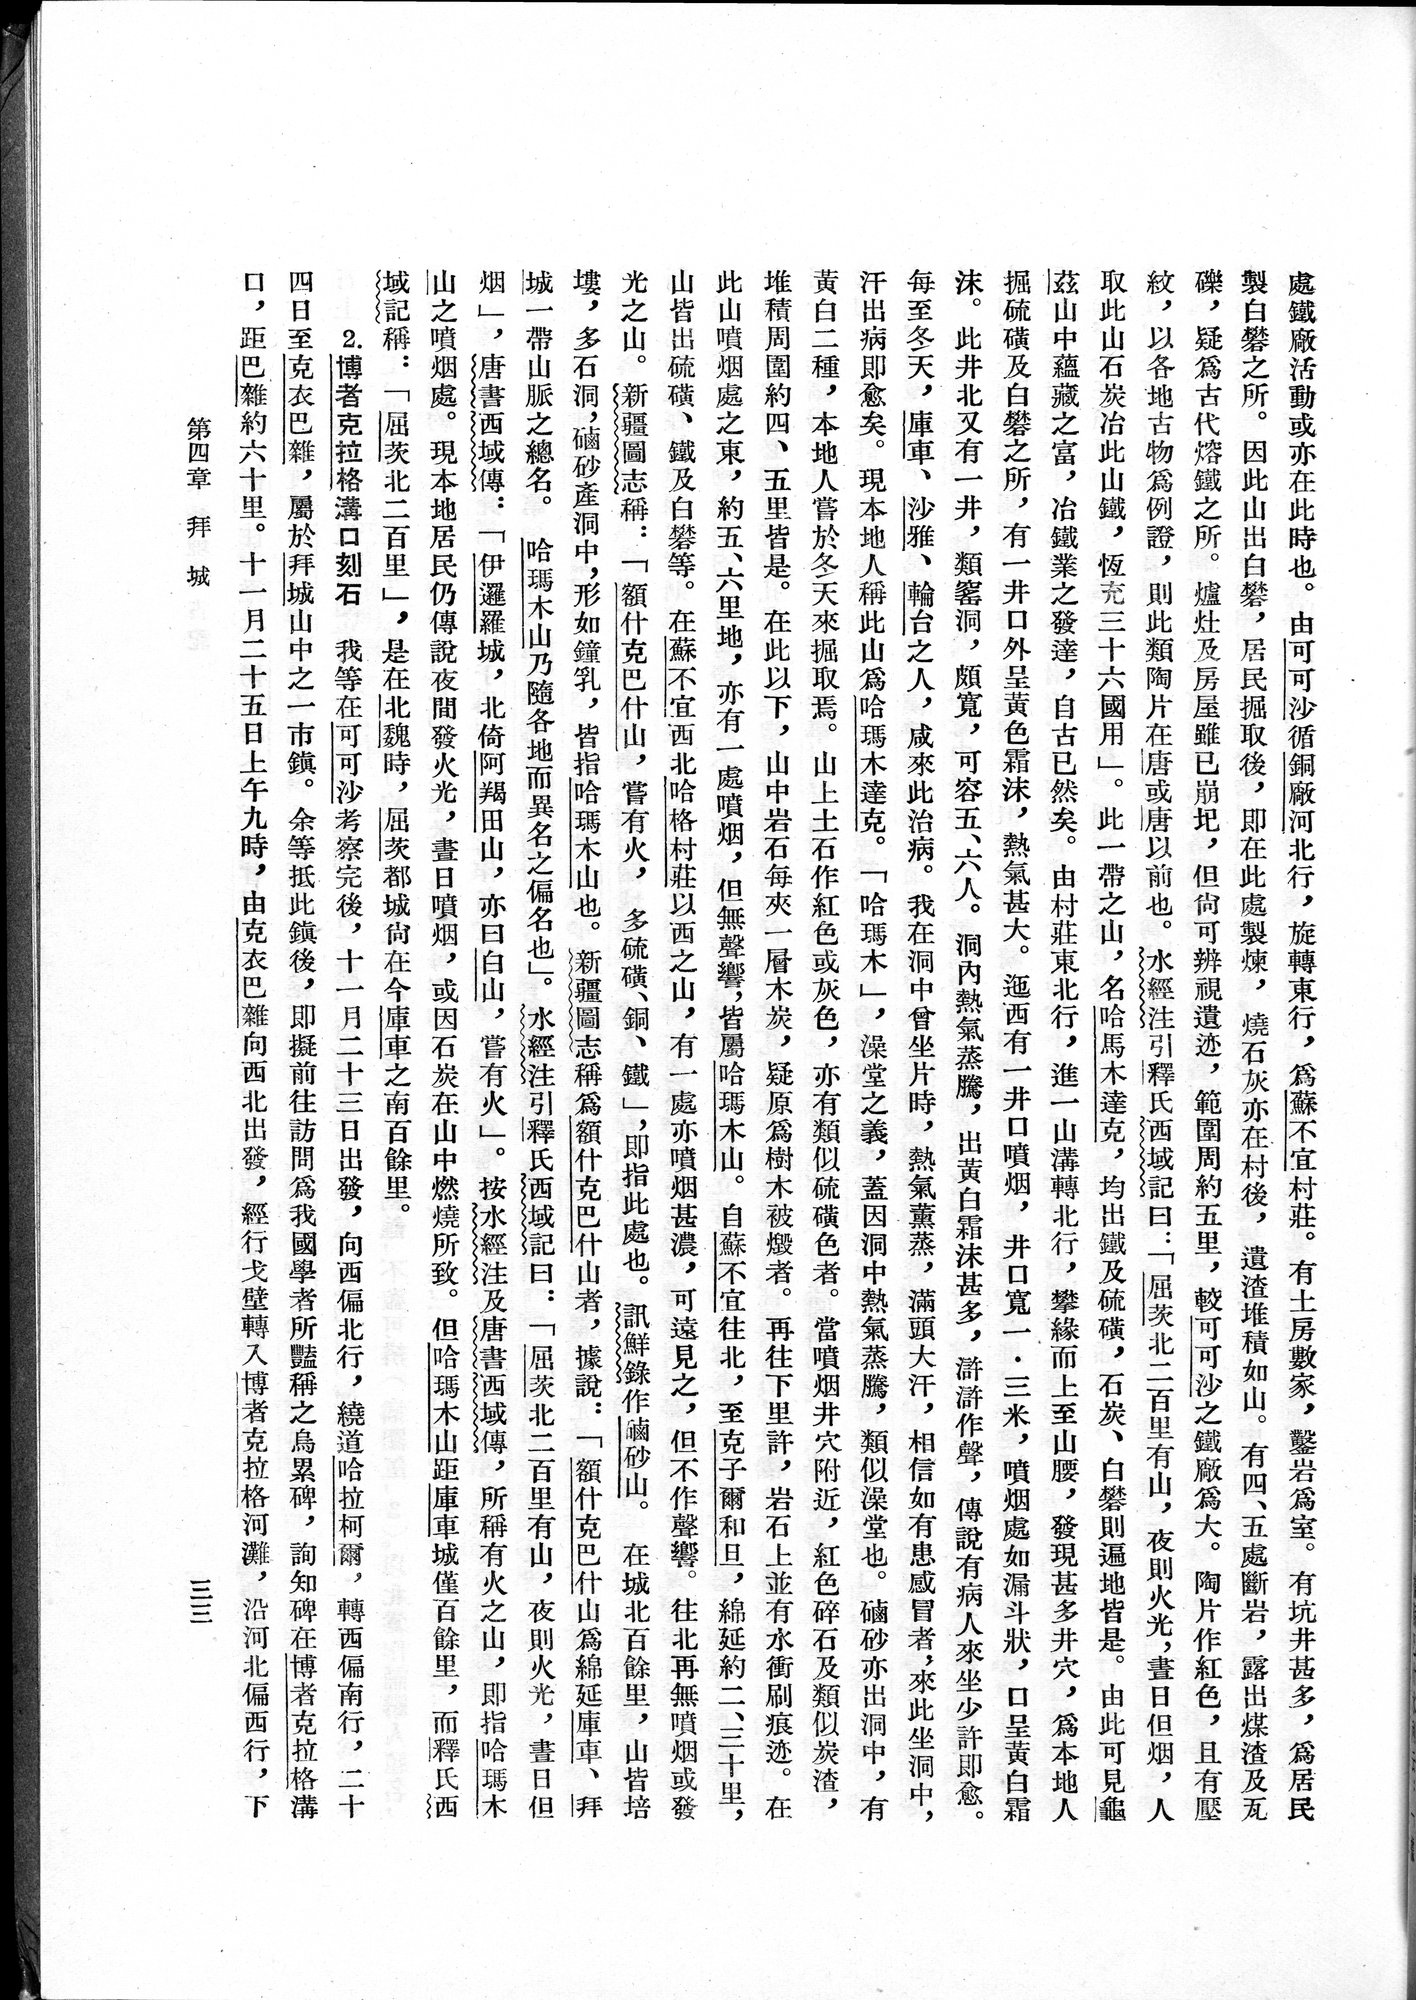 塔里木盆地考古記 : vol.1 / Page 57 (Grayscale High Resolution Image)